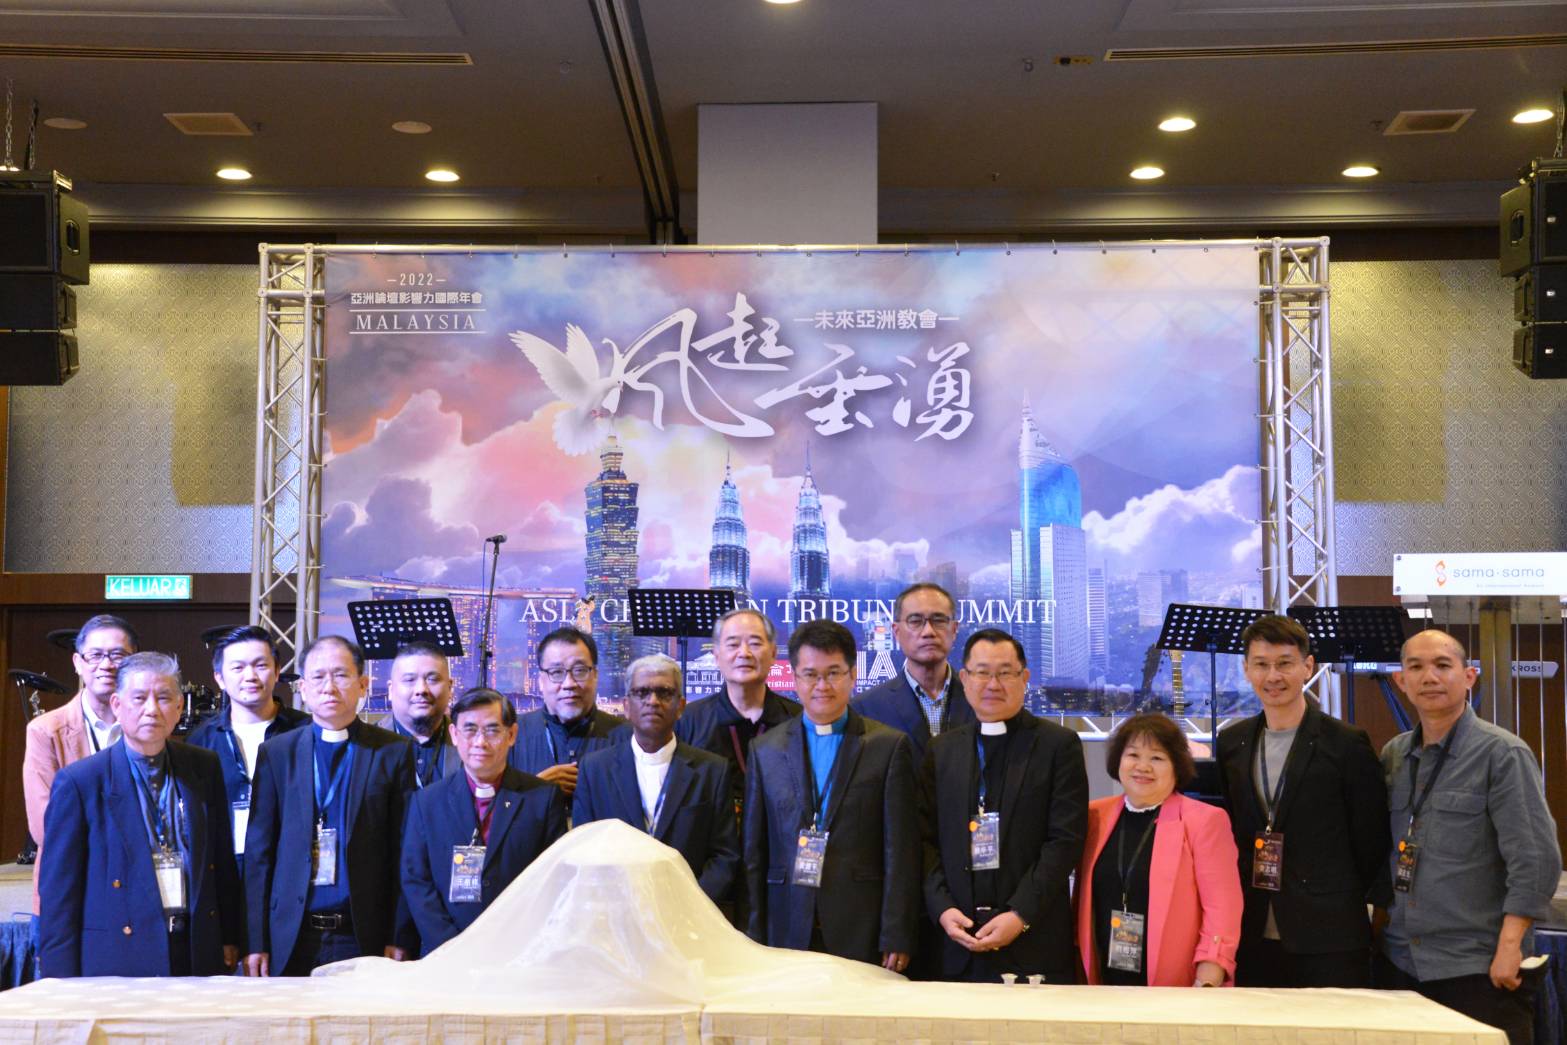 馬來西亞主理聖餐的各宗派牧者代表以及 IAA 亞洲論壇影響力國際年會籌備小組合影。(圖/李容珍攝影)